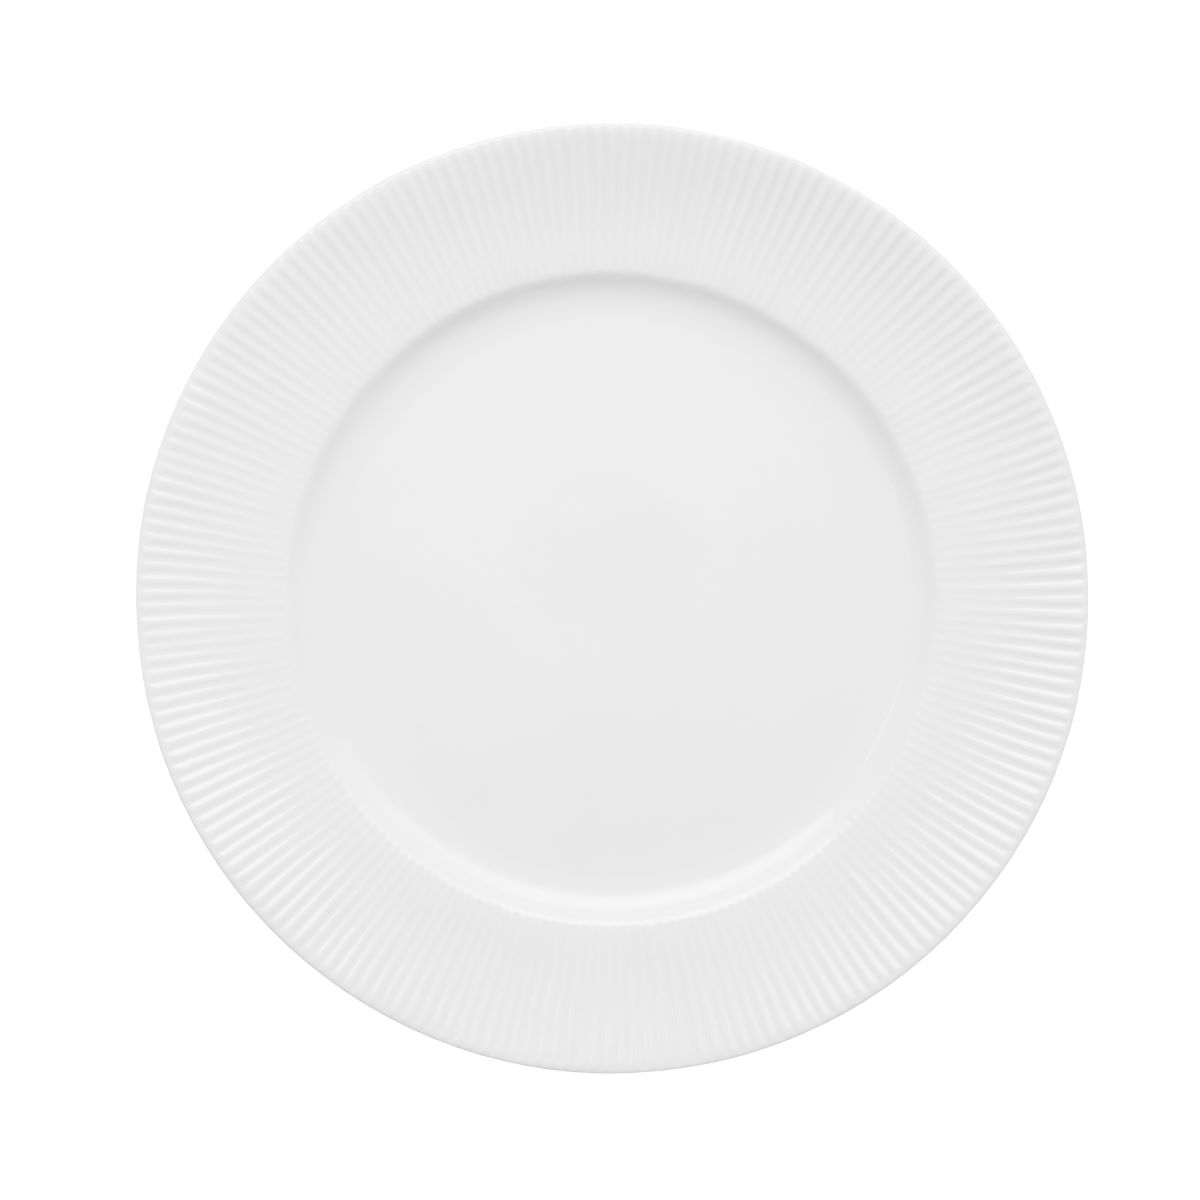 Groovy middagstallerken 26,5 cm. - hvid porcelæn